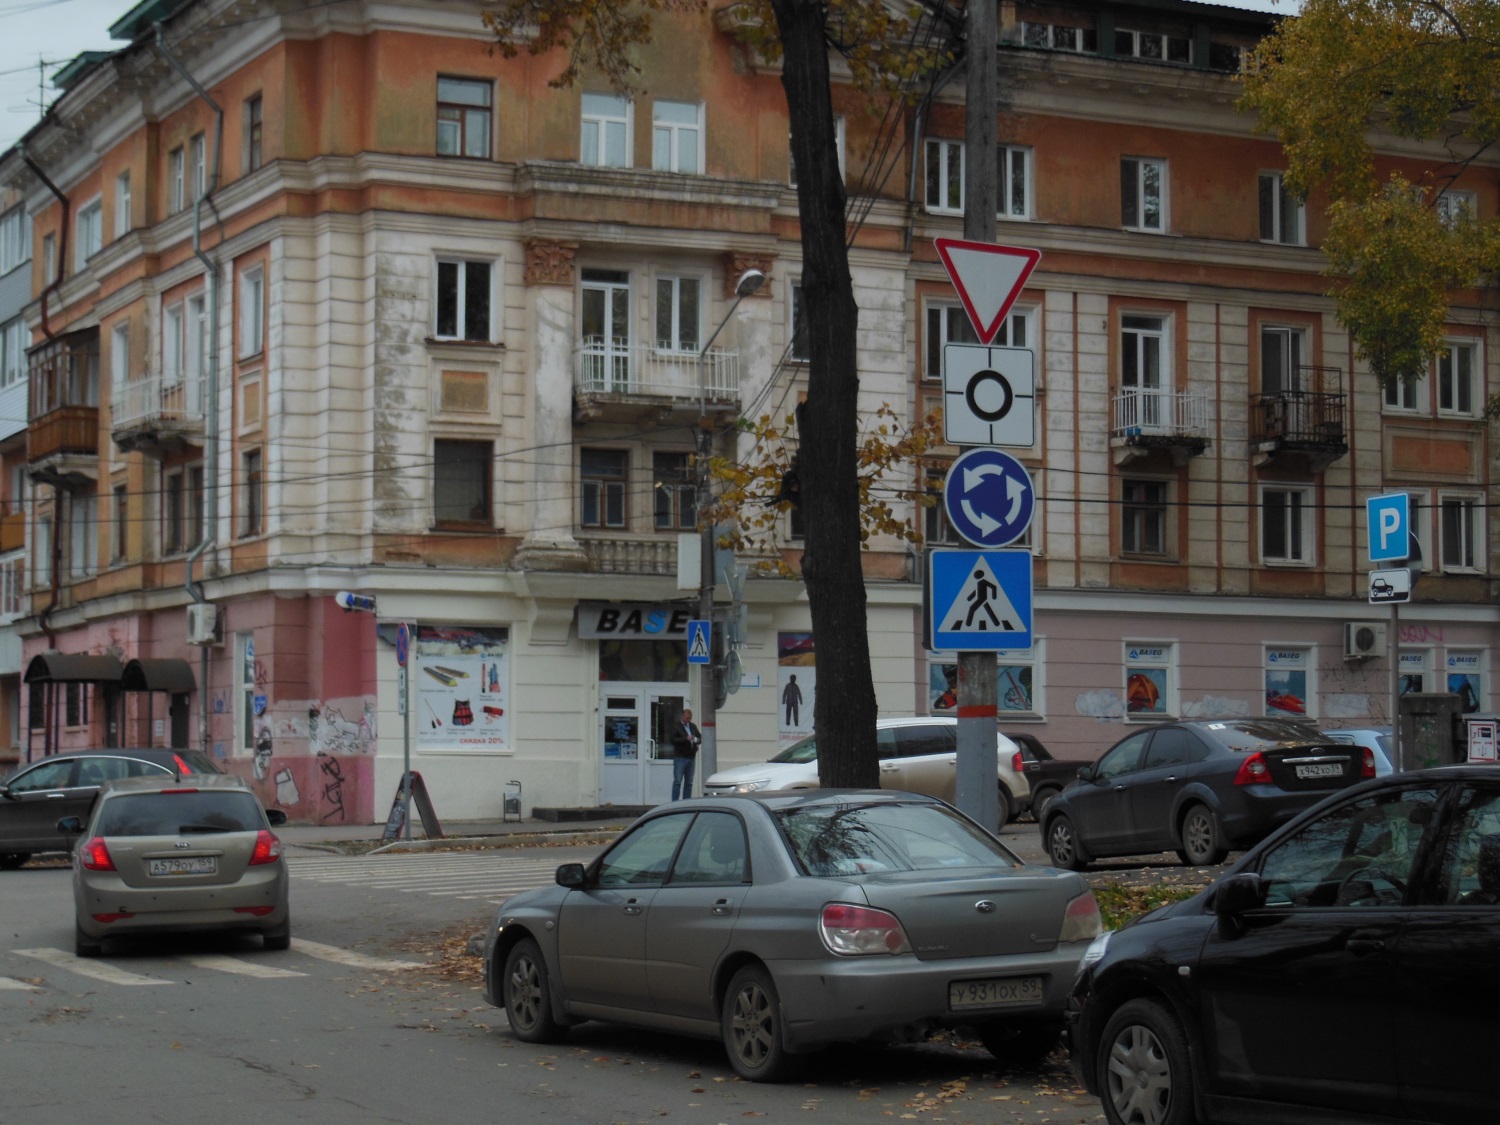 Безопасность превыше всего: на перекрестке улиц Советская и 25 Октября заработало мини-кольцо